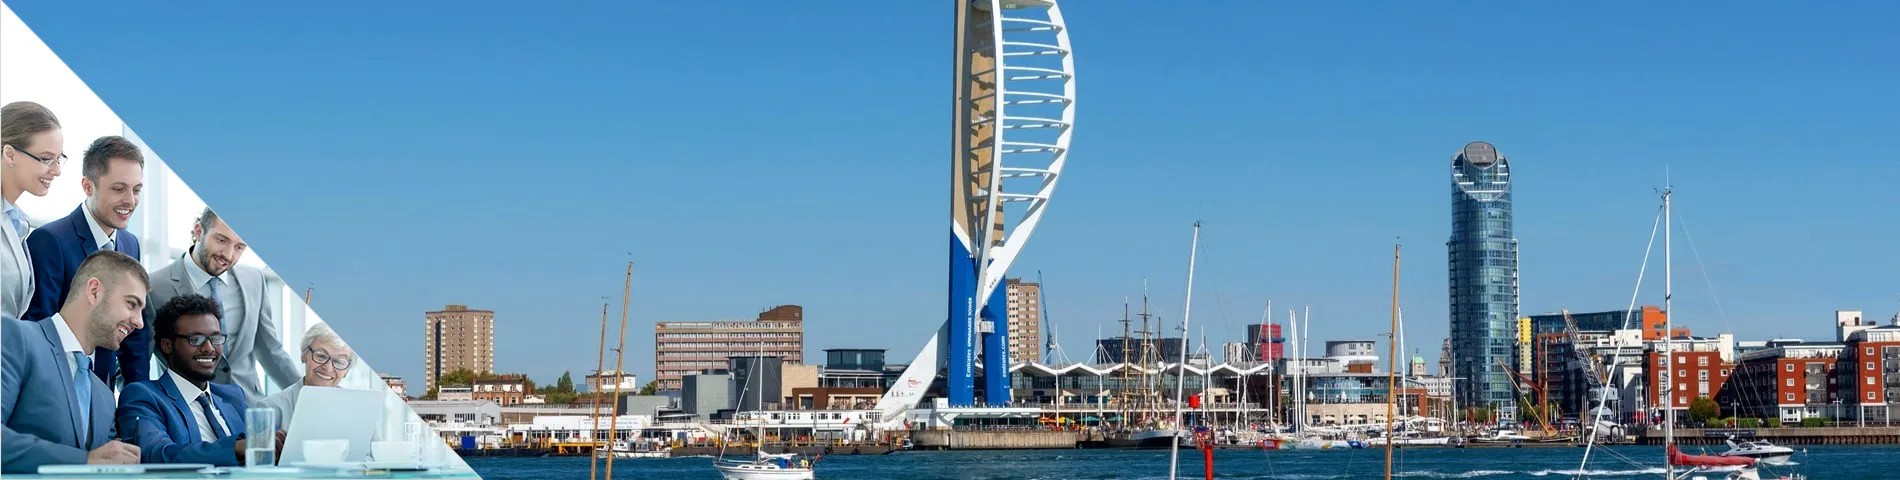 Portsmouth - Grupo de Negócios